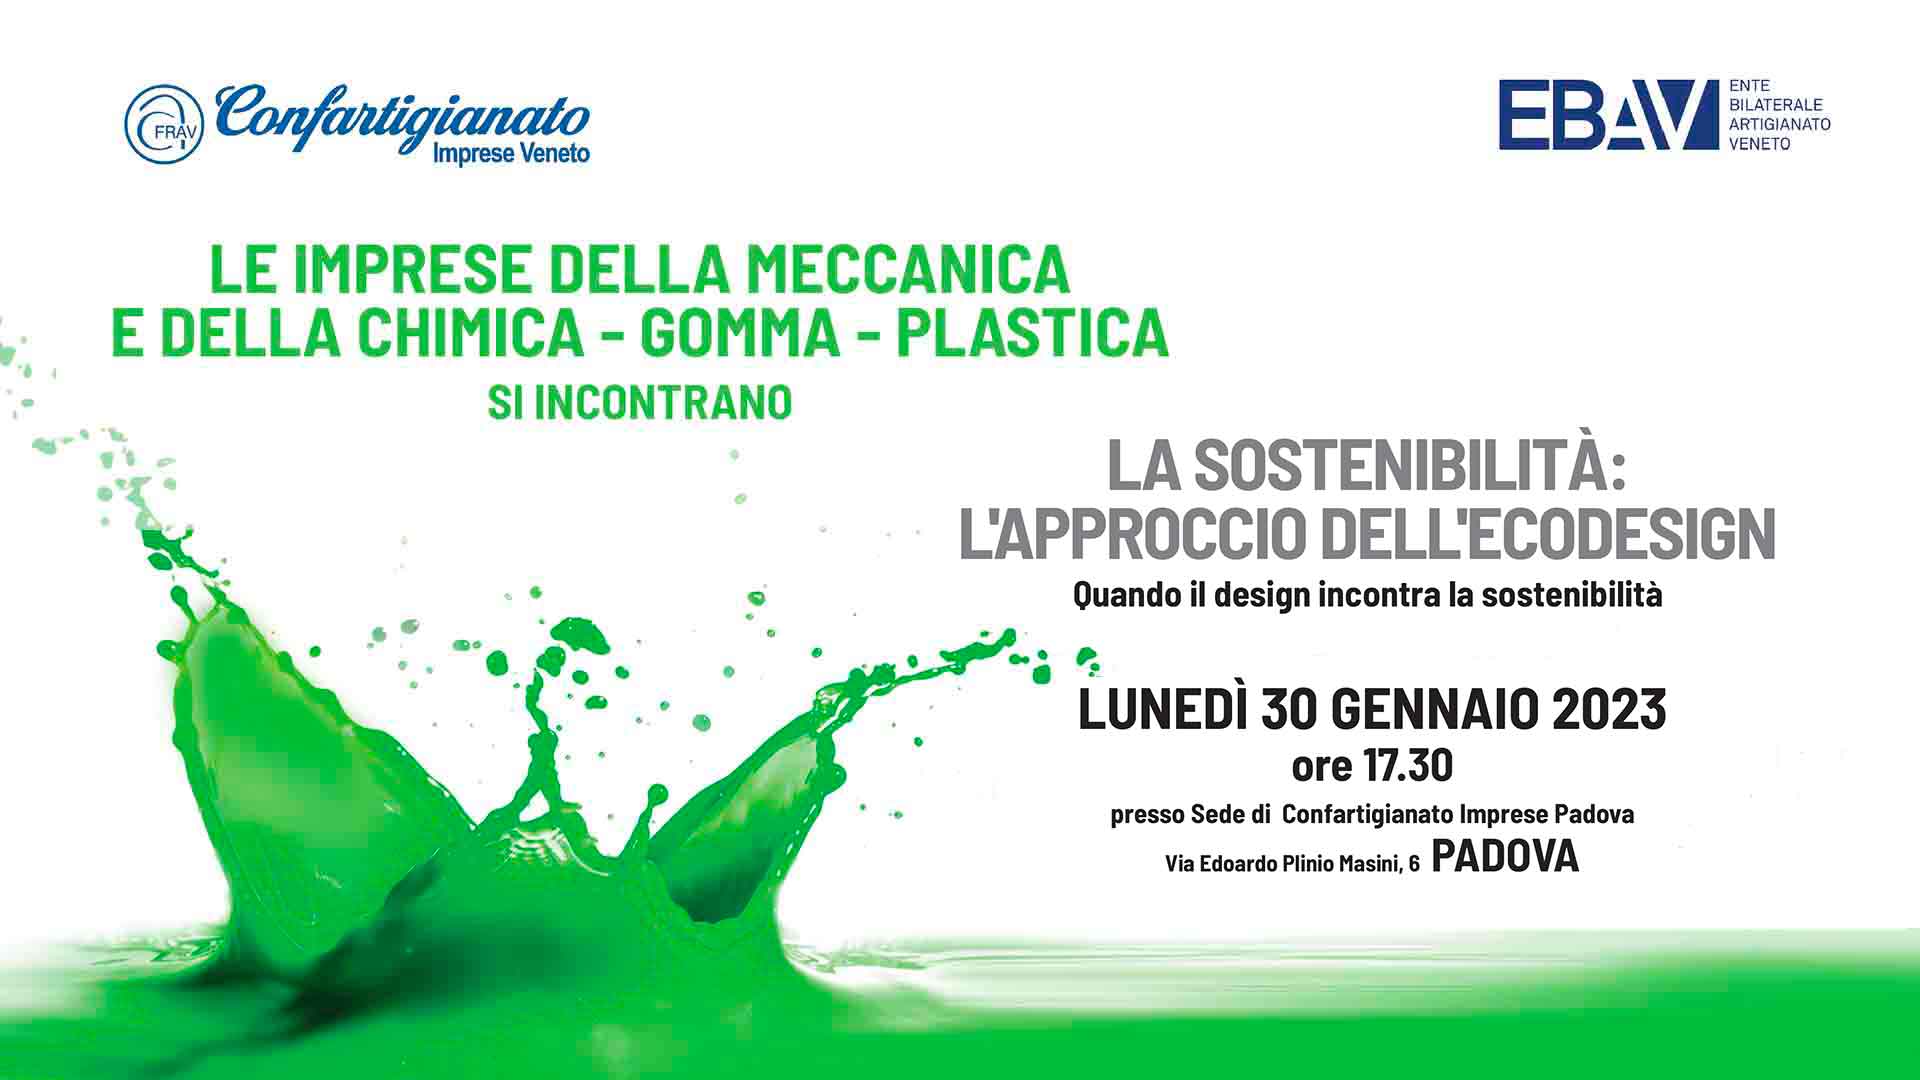 CHIMICA GOMMA PLASTICA – Secondo incontro regionale sulla sostenibilità: il 30 gennaio, a Padova, appuntamento sul tema “La sostenibilità: l'approccio dell'ecodesign"